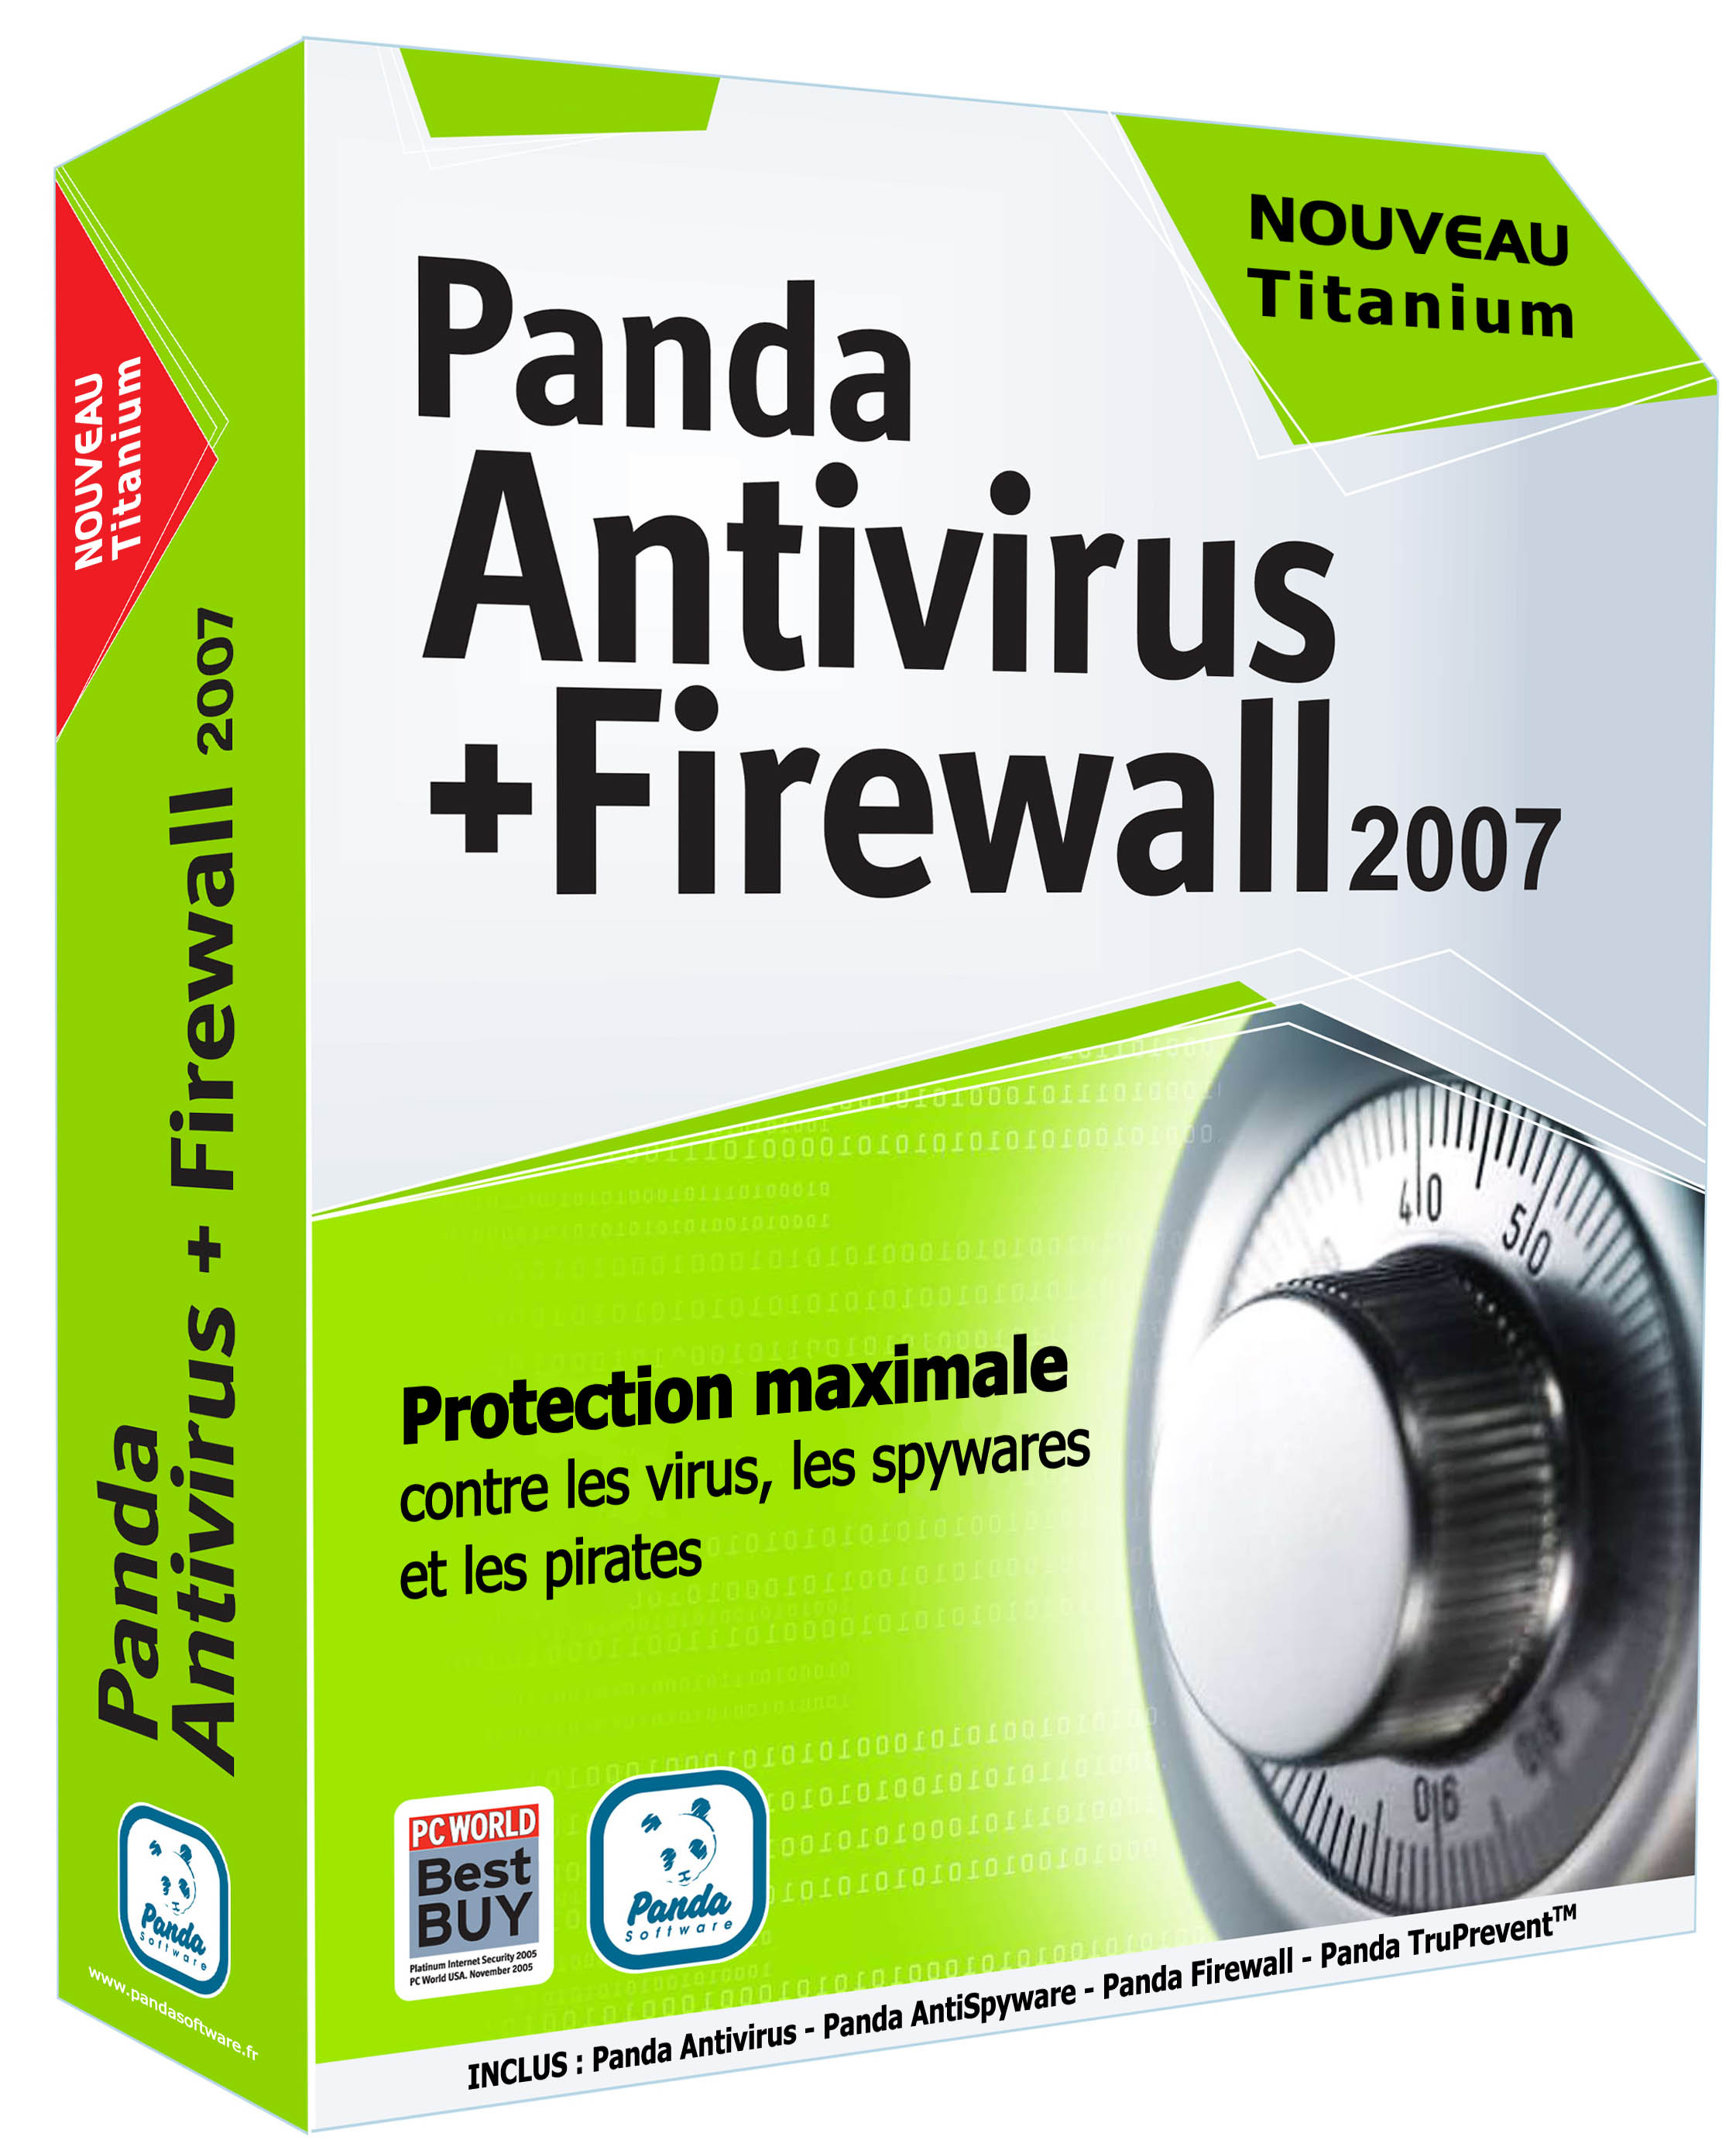 panda antivirus firewall